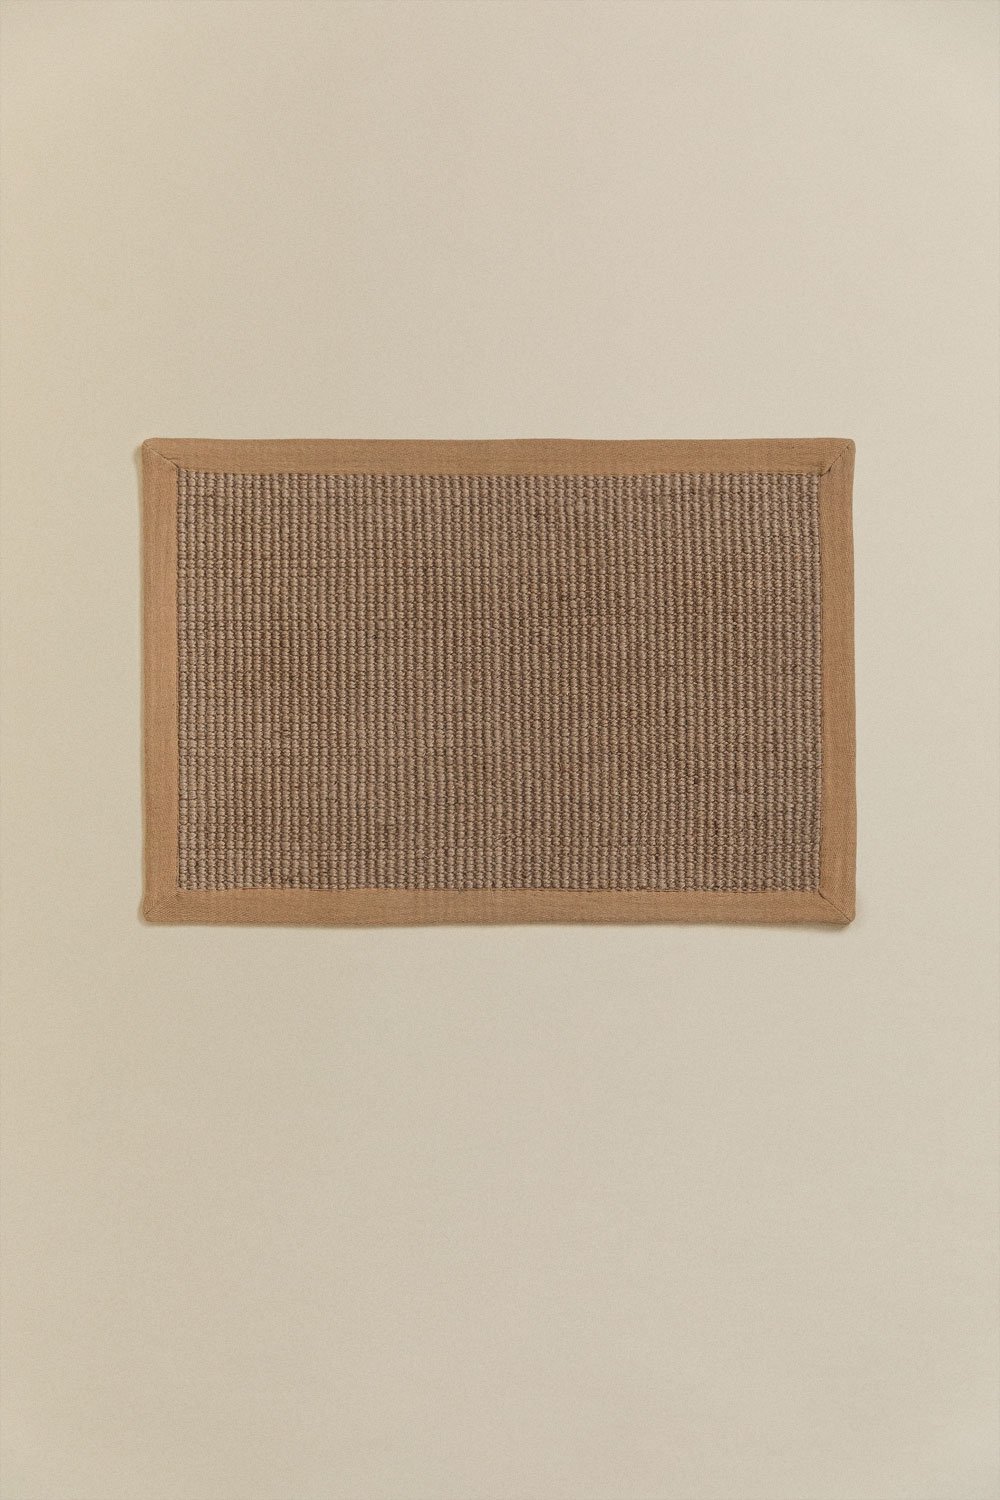 Paillasson en Jute (60x40 cm) Gimendy, image de la galerie 1